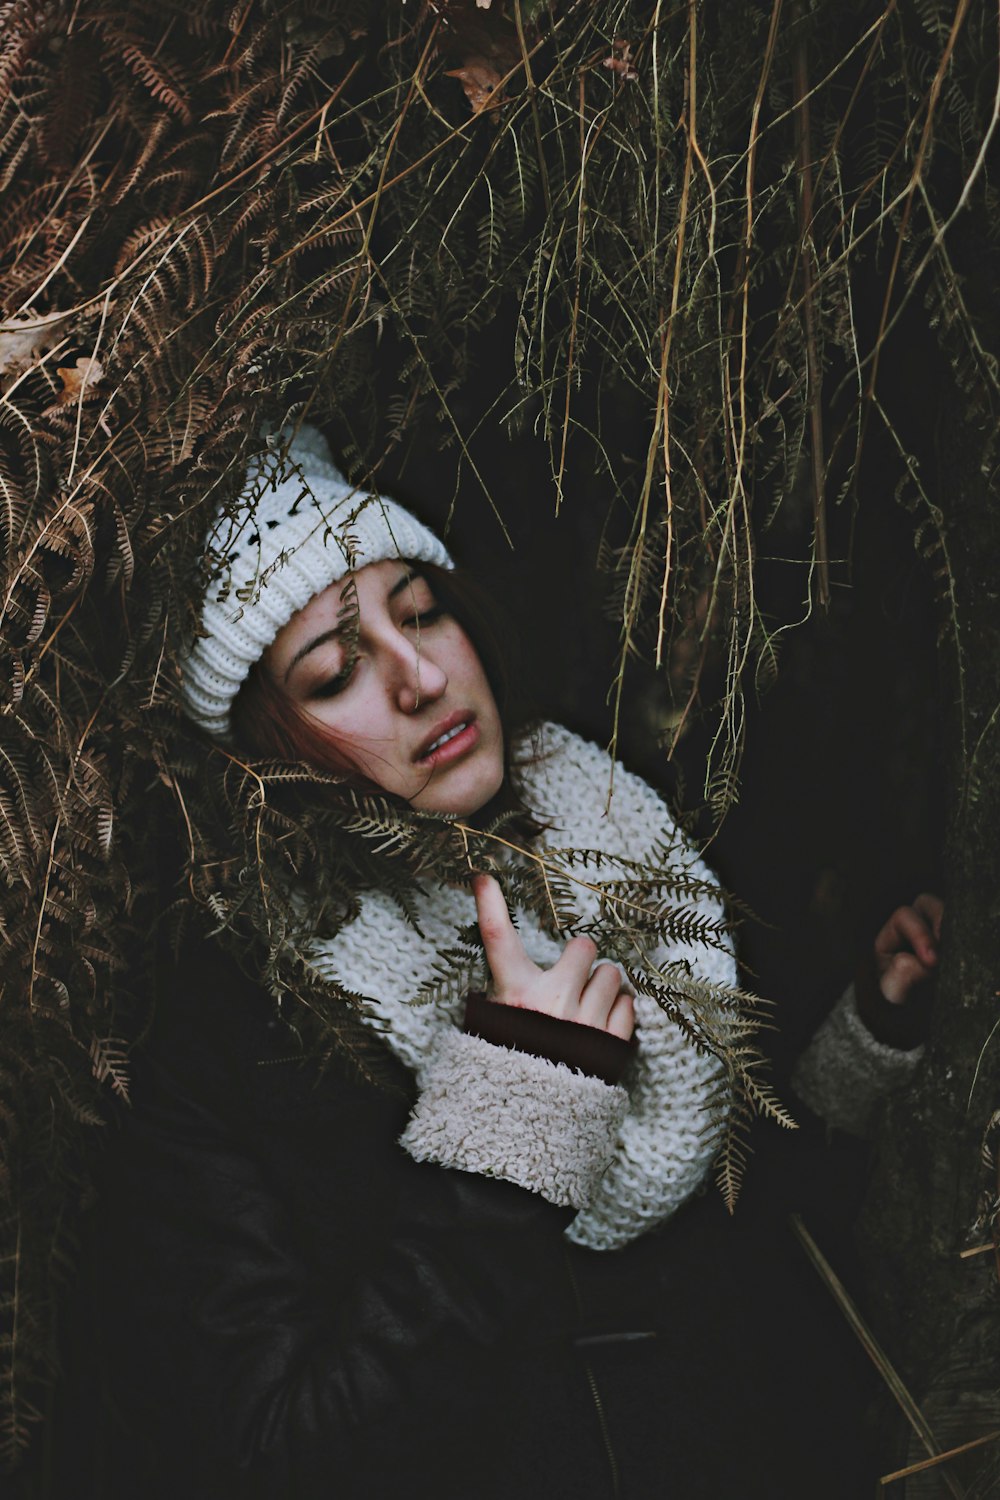 Frau unter einem Bogen aus getrockneten Blättern, die einen Schal hält